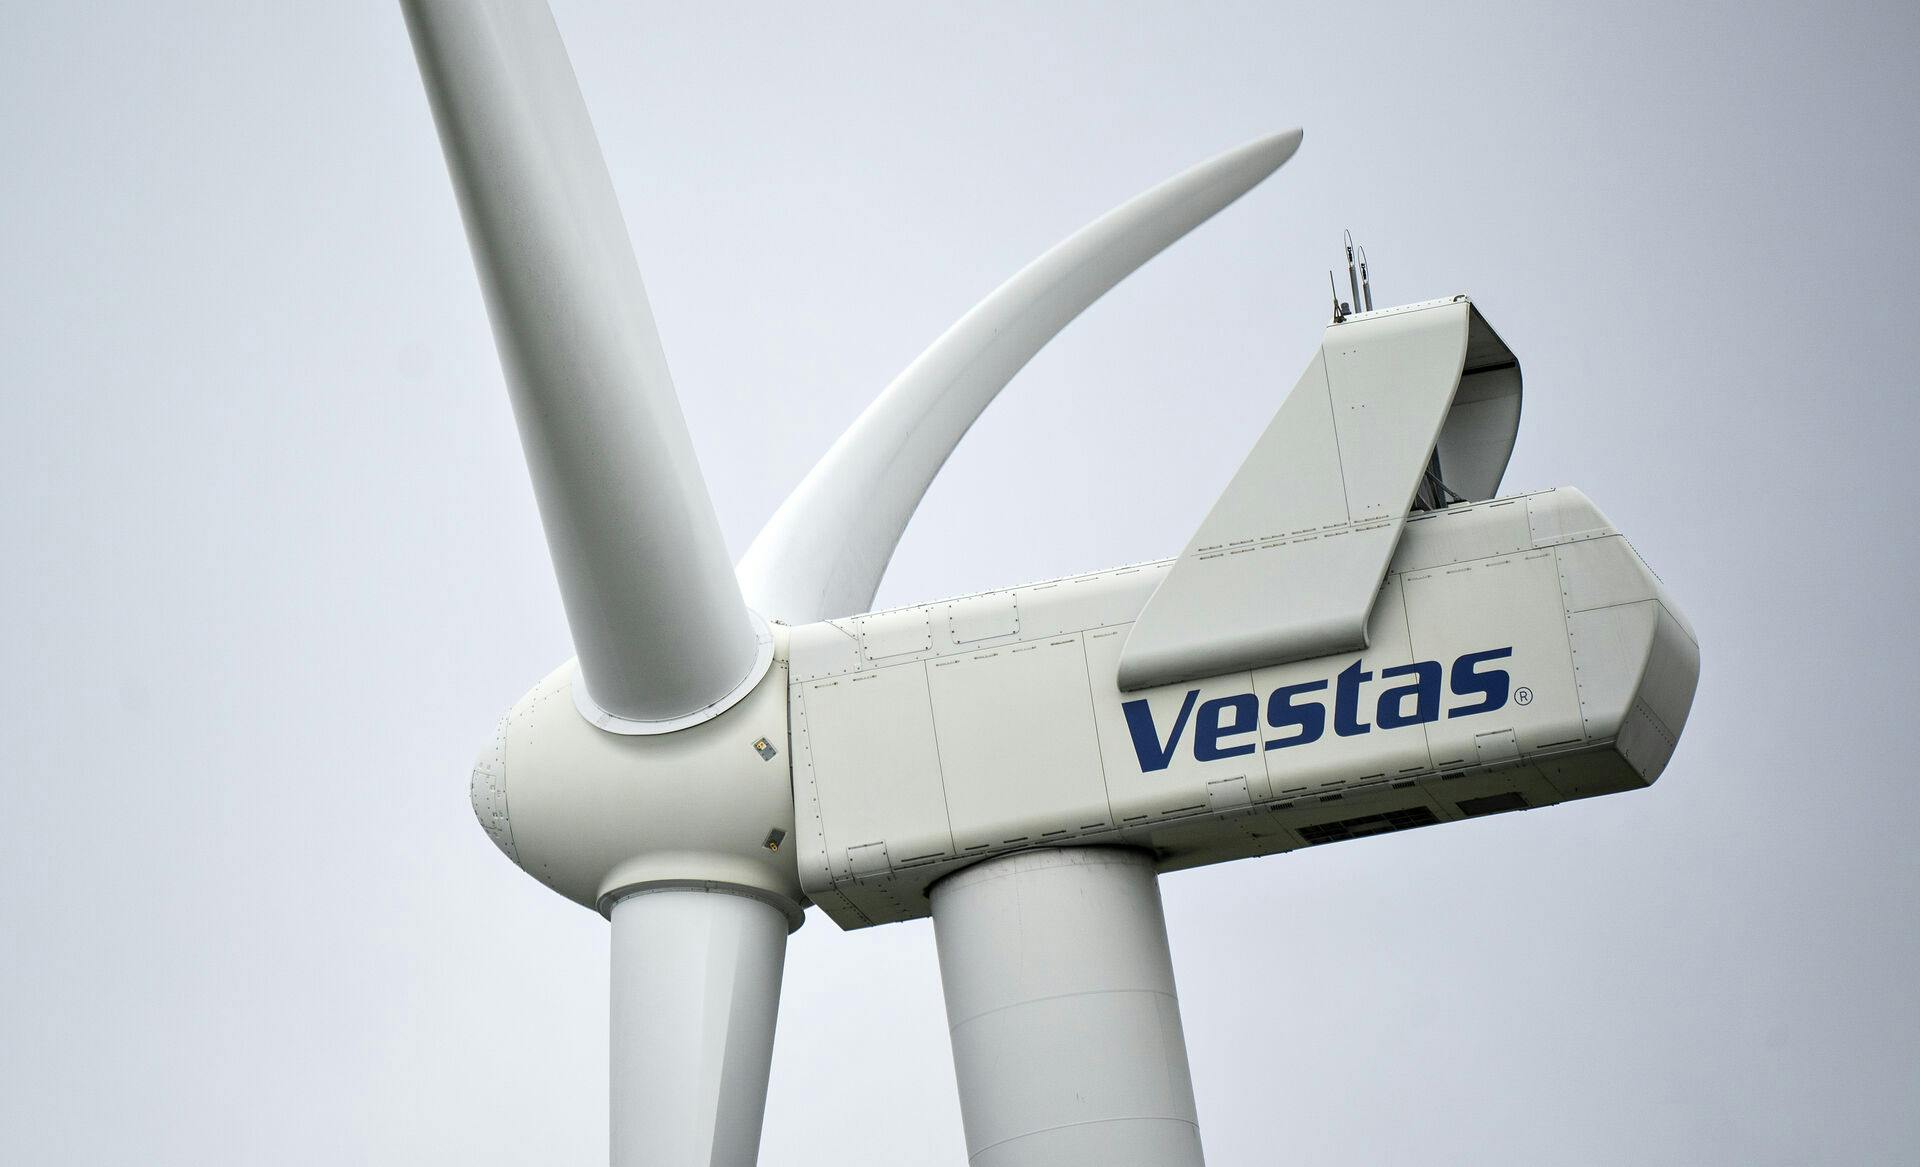 Vestas vindmølle med logo på nacellen nær Brønderslev, tirsdag den 30. marts 2021.